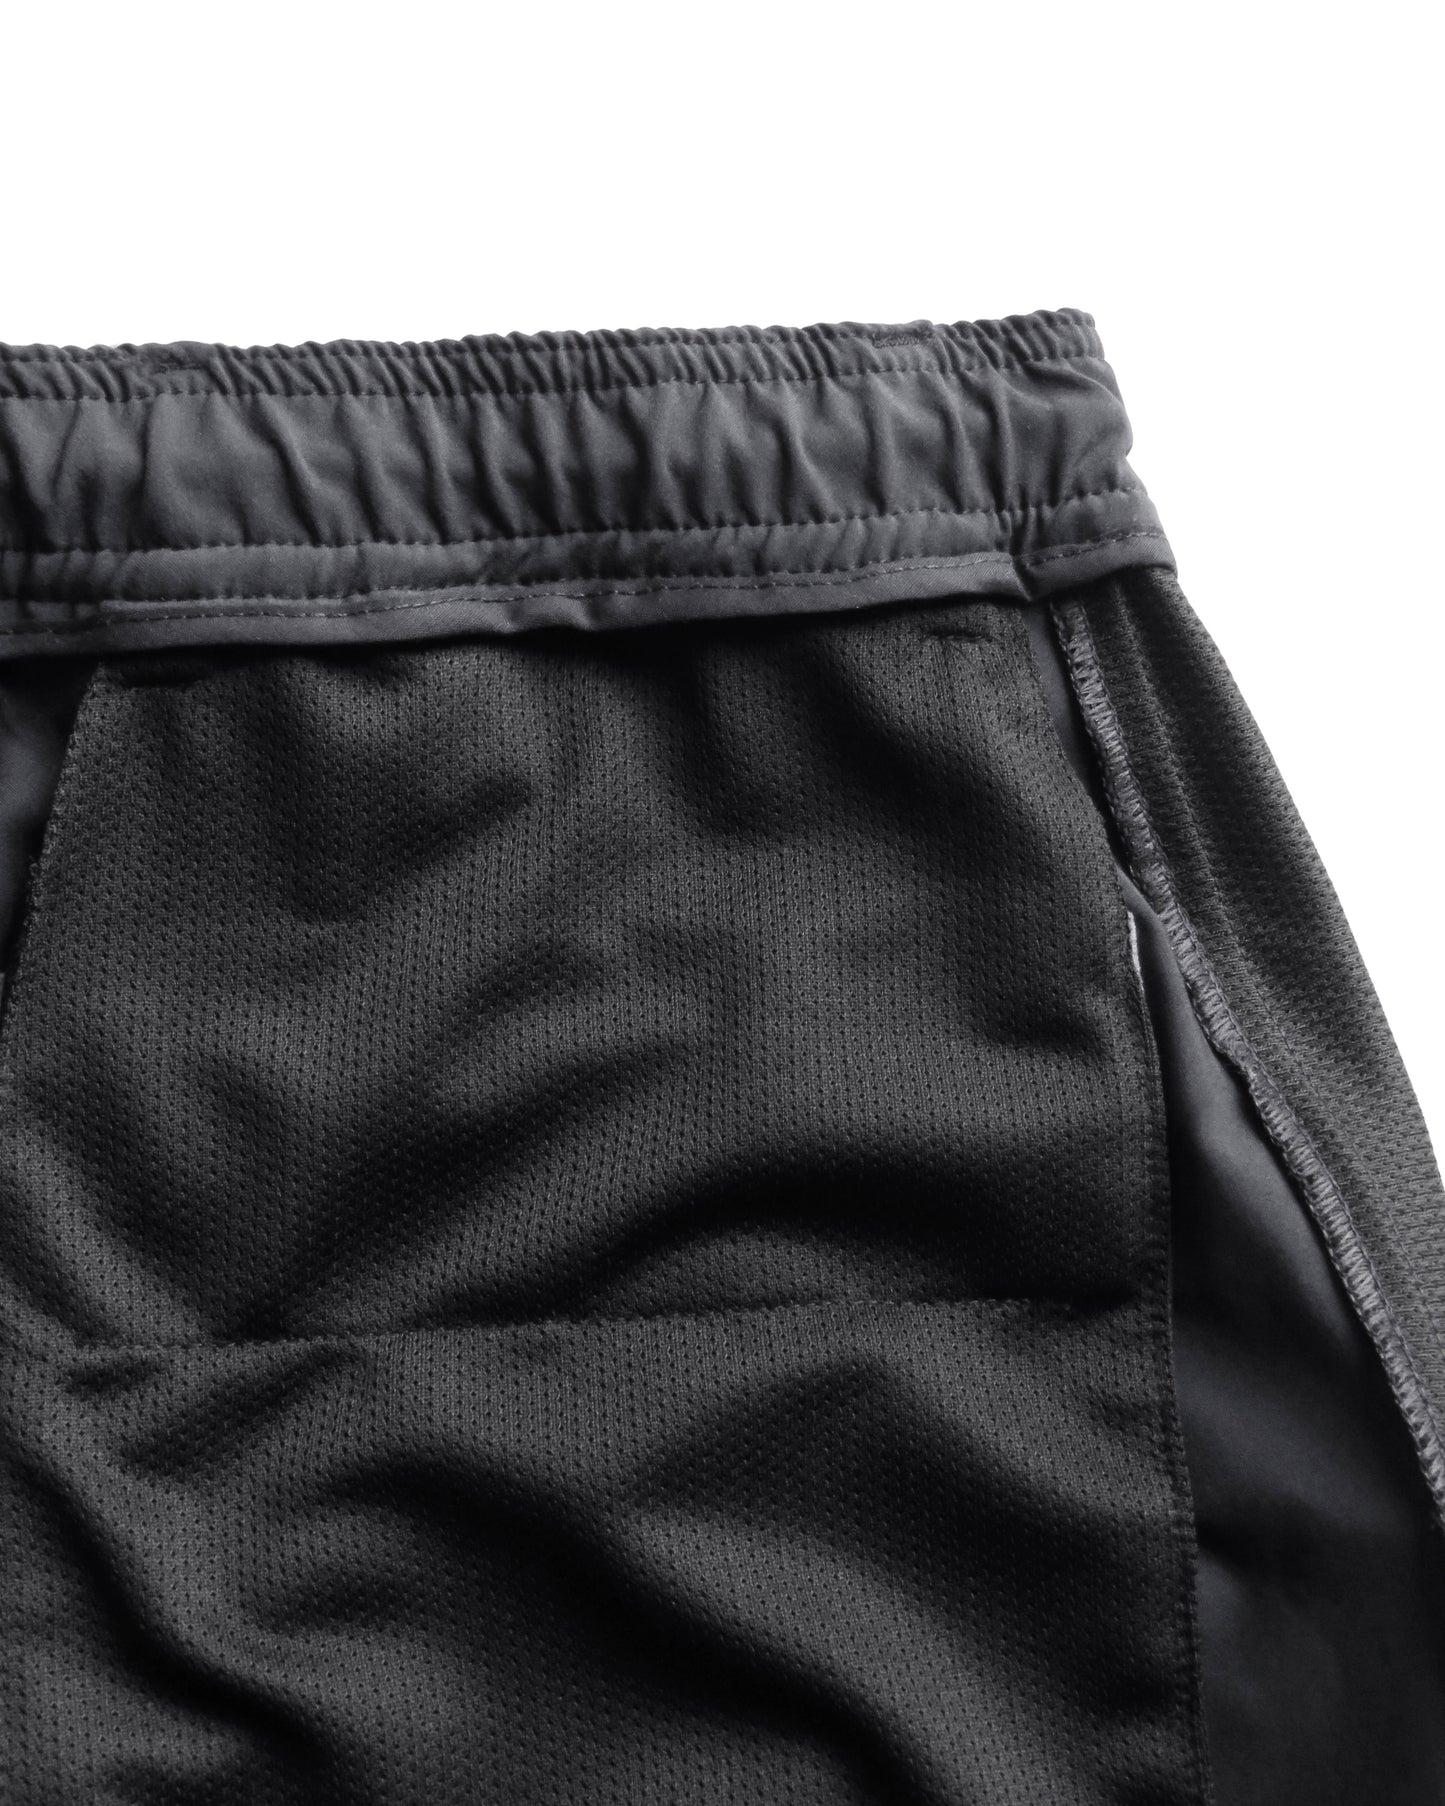 Hybrid Shorts / Athlon Dark Grey